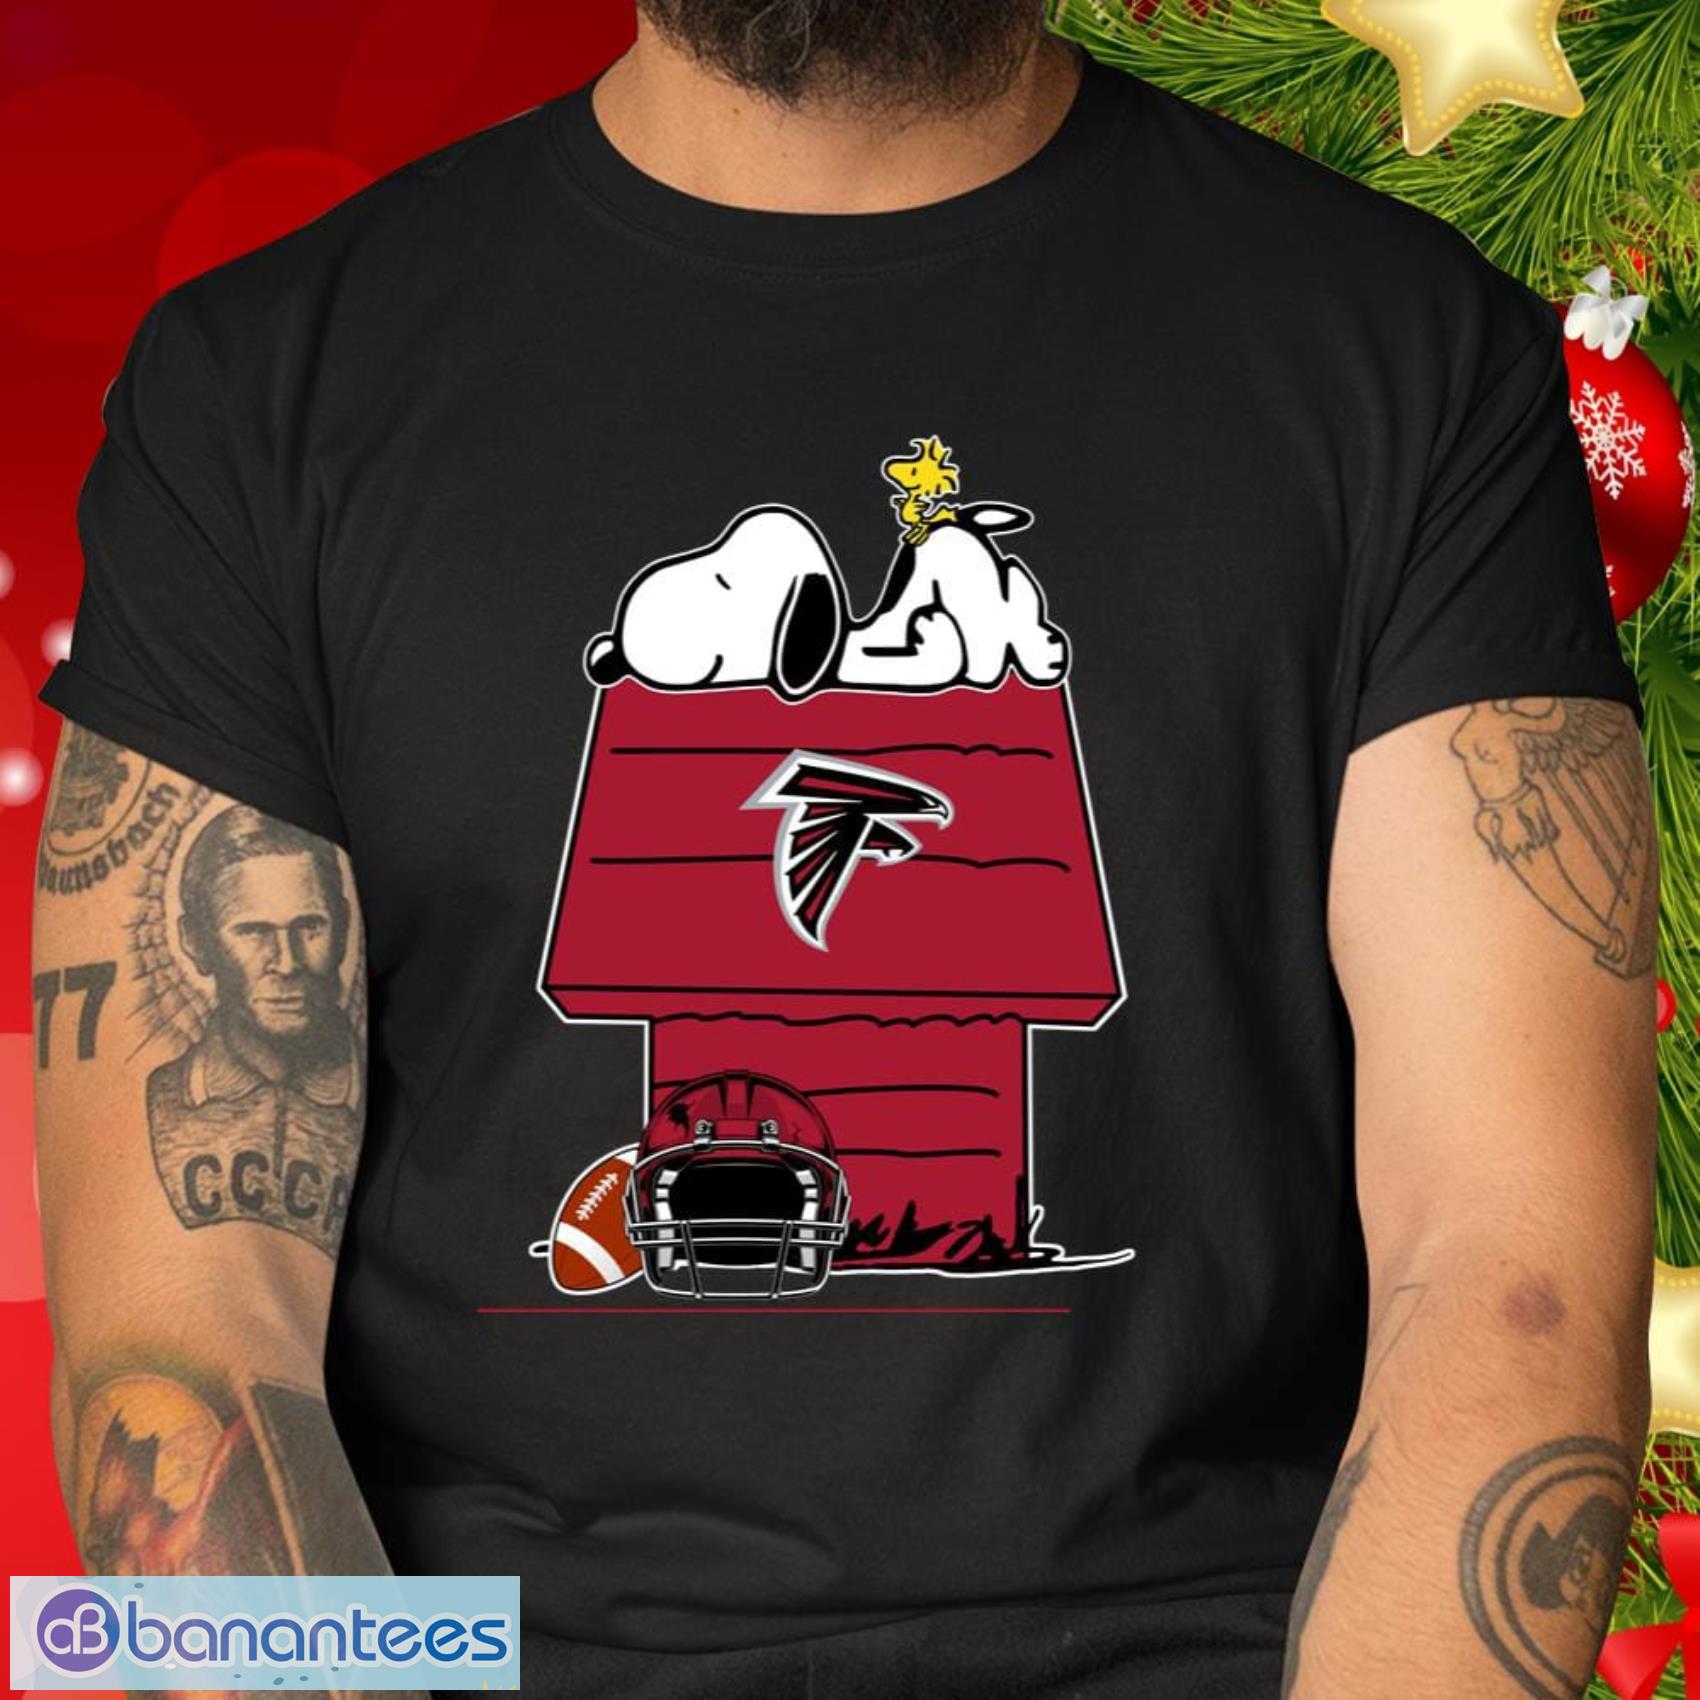 Atlanta Falcons NFL Football Gift Fr Fans Snoopy Woodstock The Peanuts Movie T Shirt - Atlanta Falcons NFL Football Snoopy Woodstock The Peanuts Movie T Shirt_2